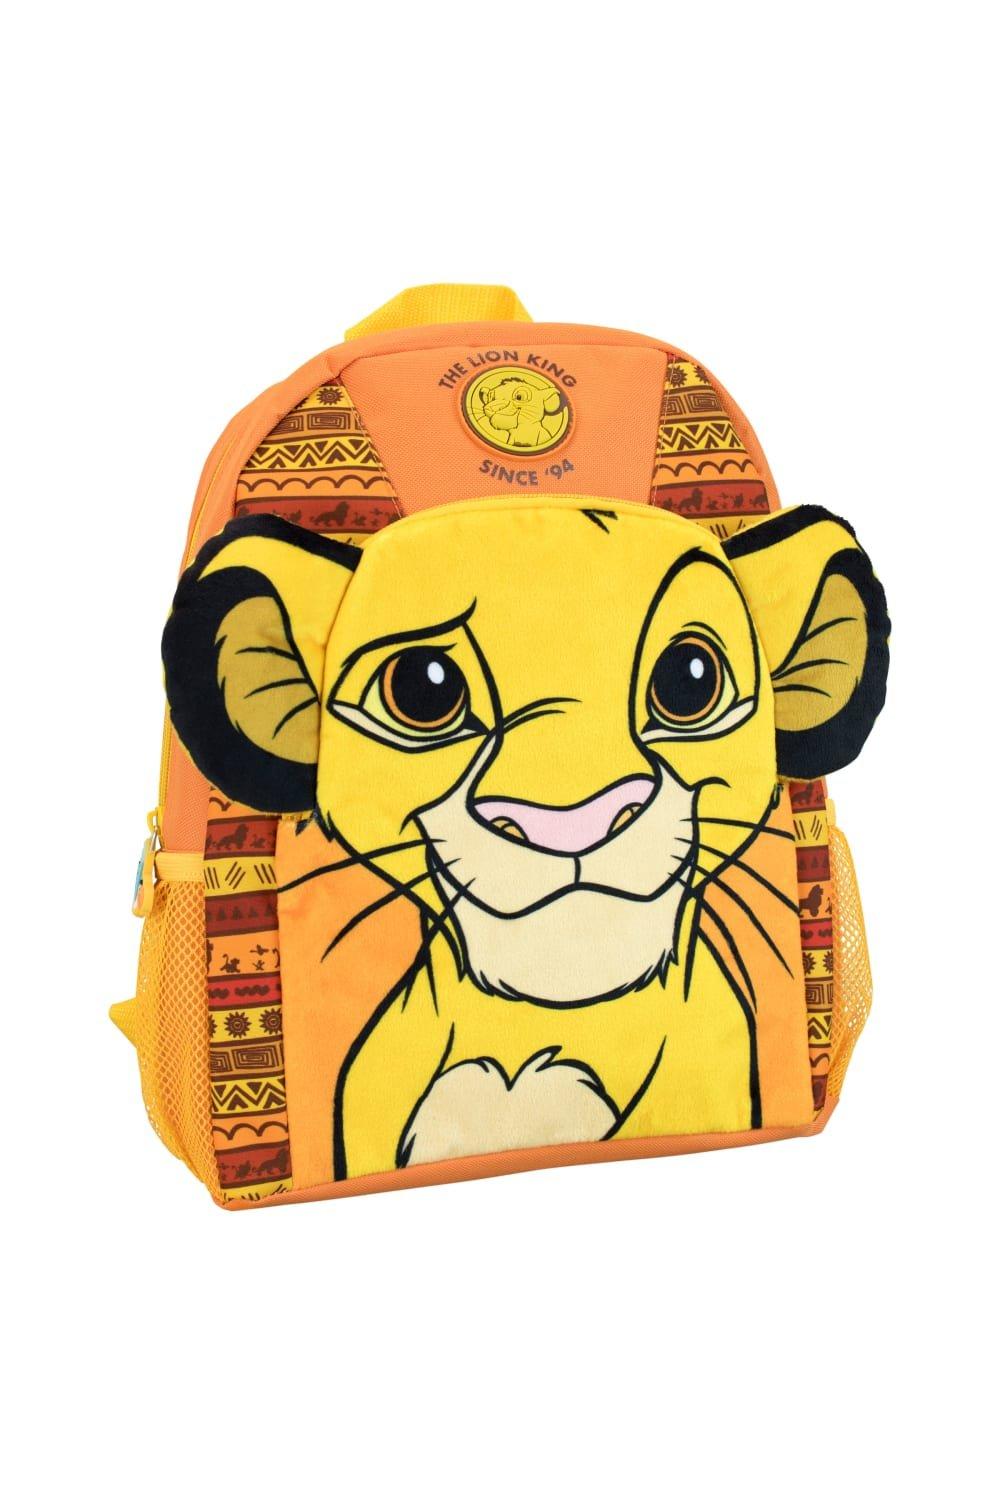 Рюкзак Короля Льва Disney, желтый printio сумка симба король лев